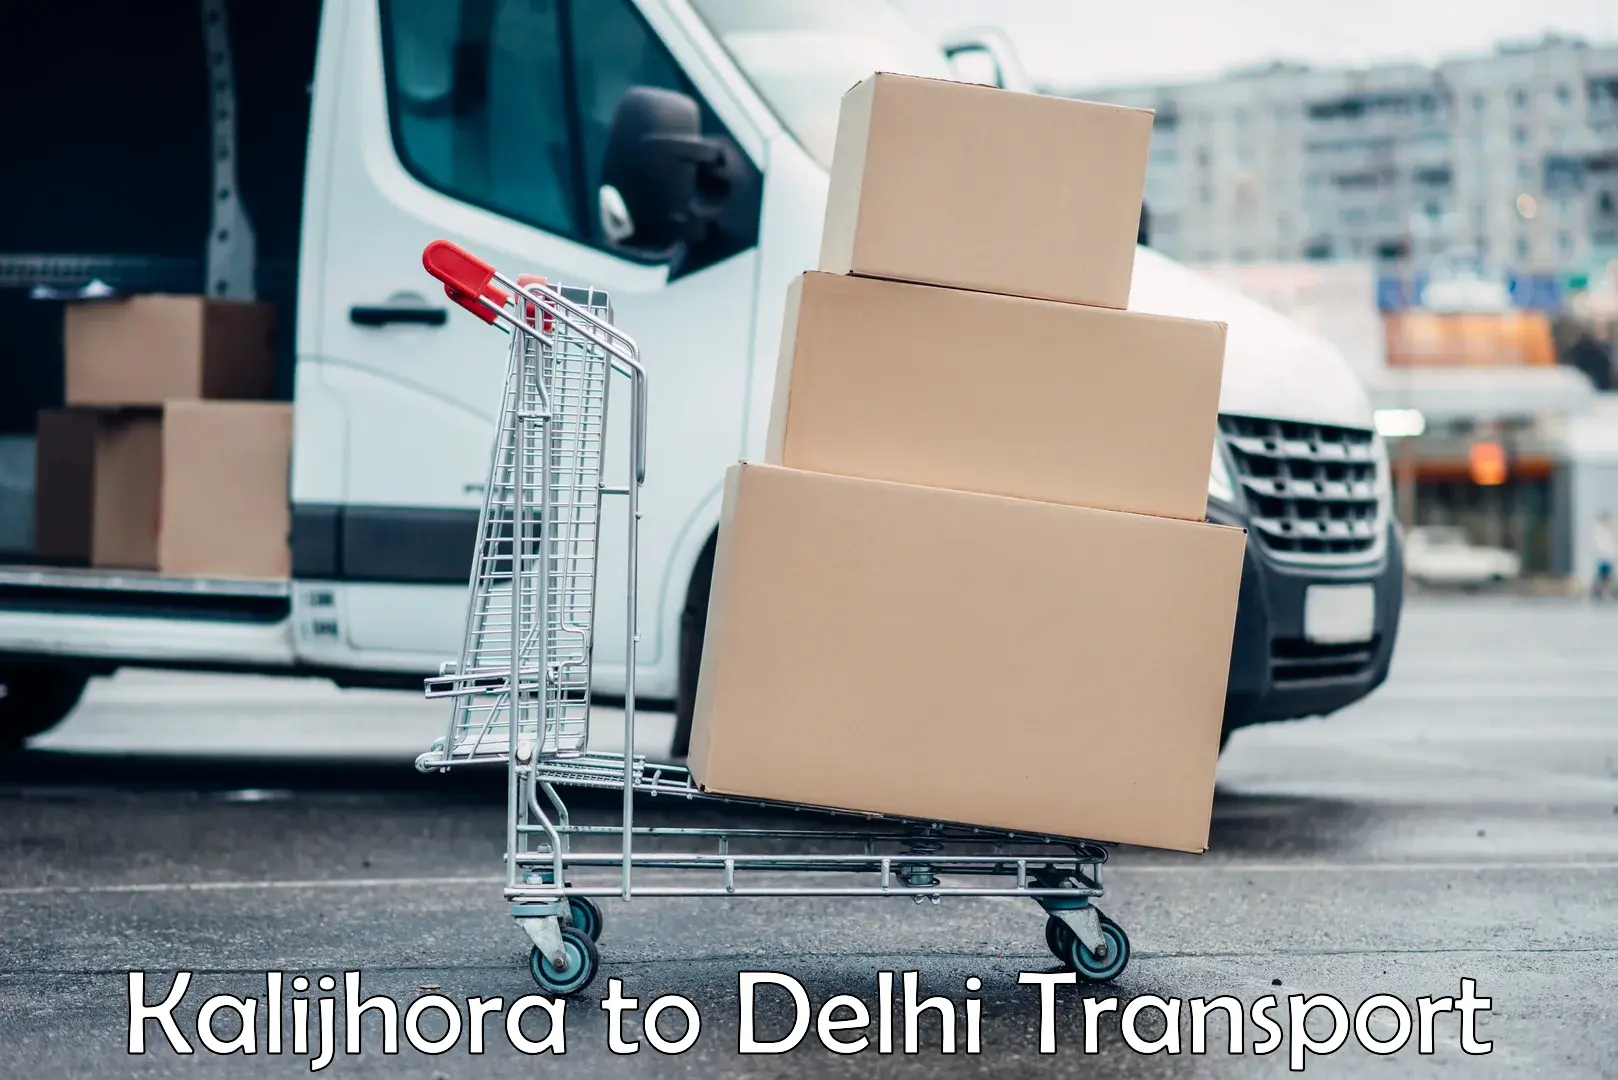 Truck transport companies in India Kalijhora to Kalkaji